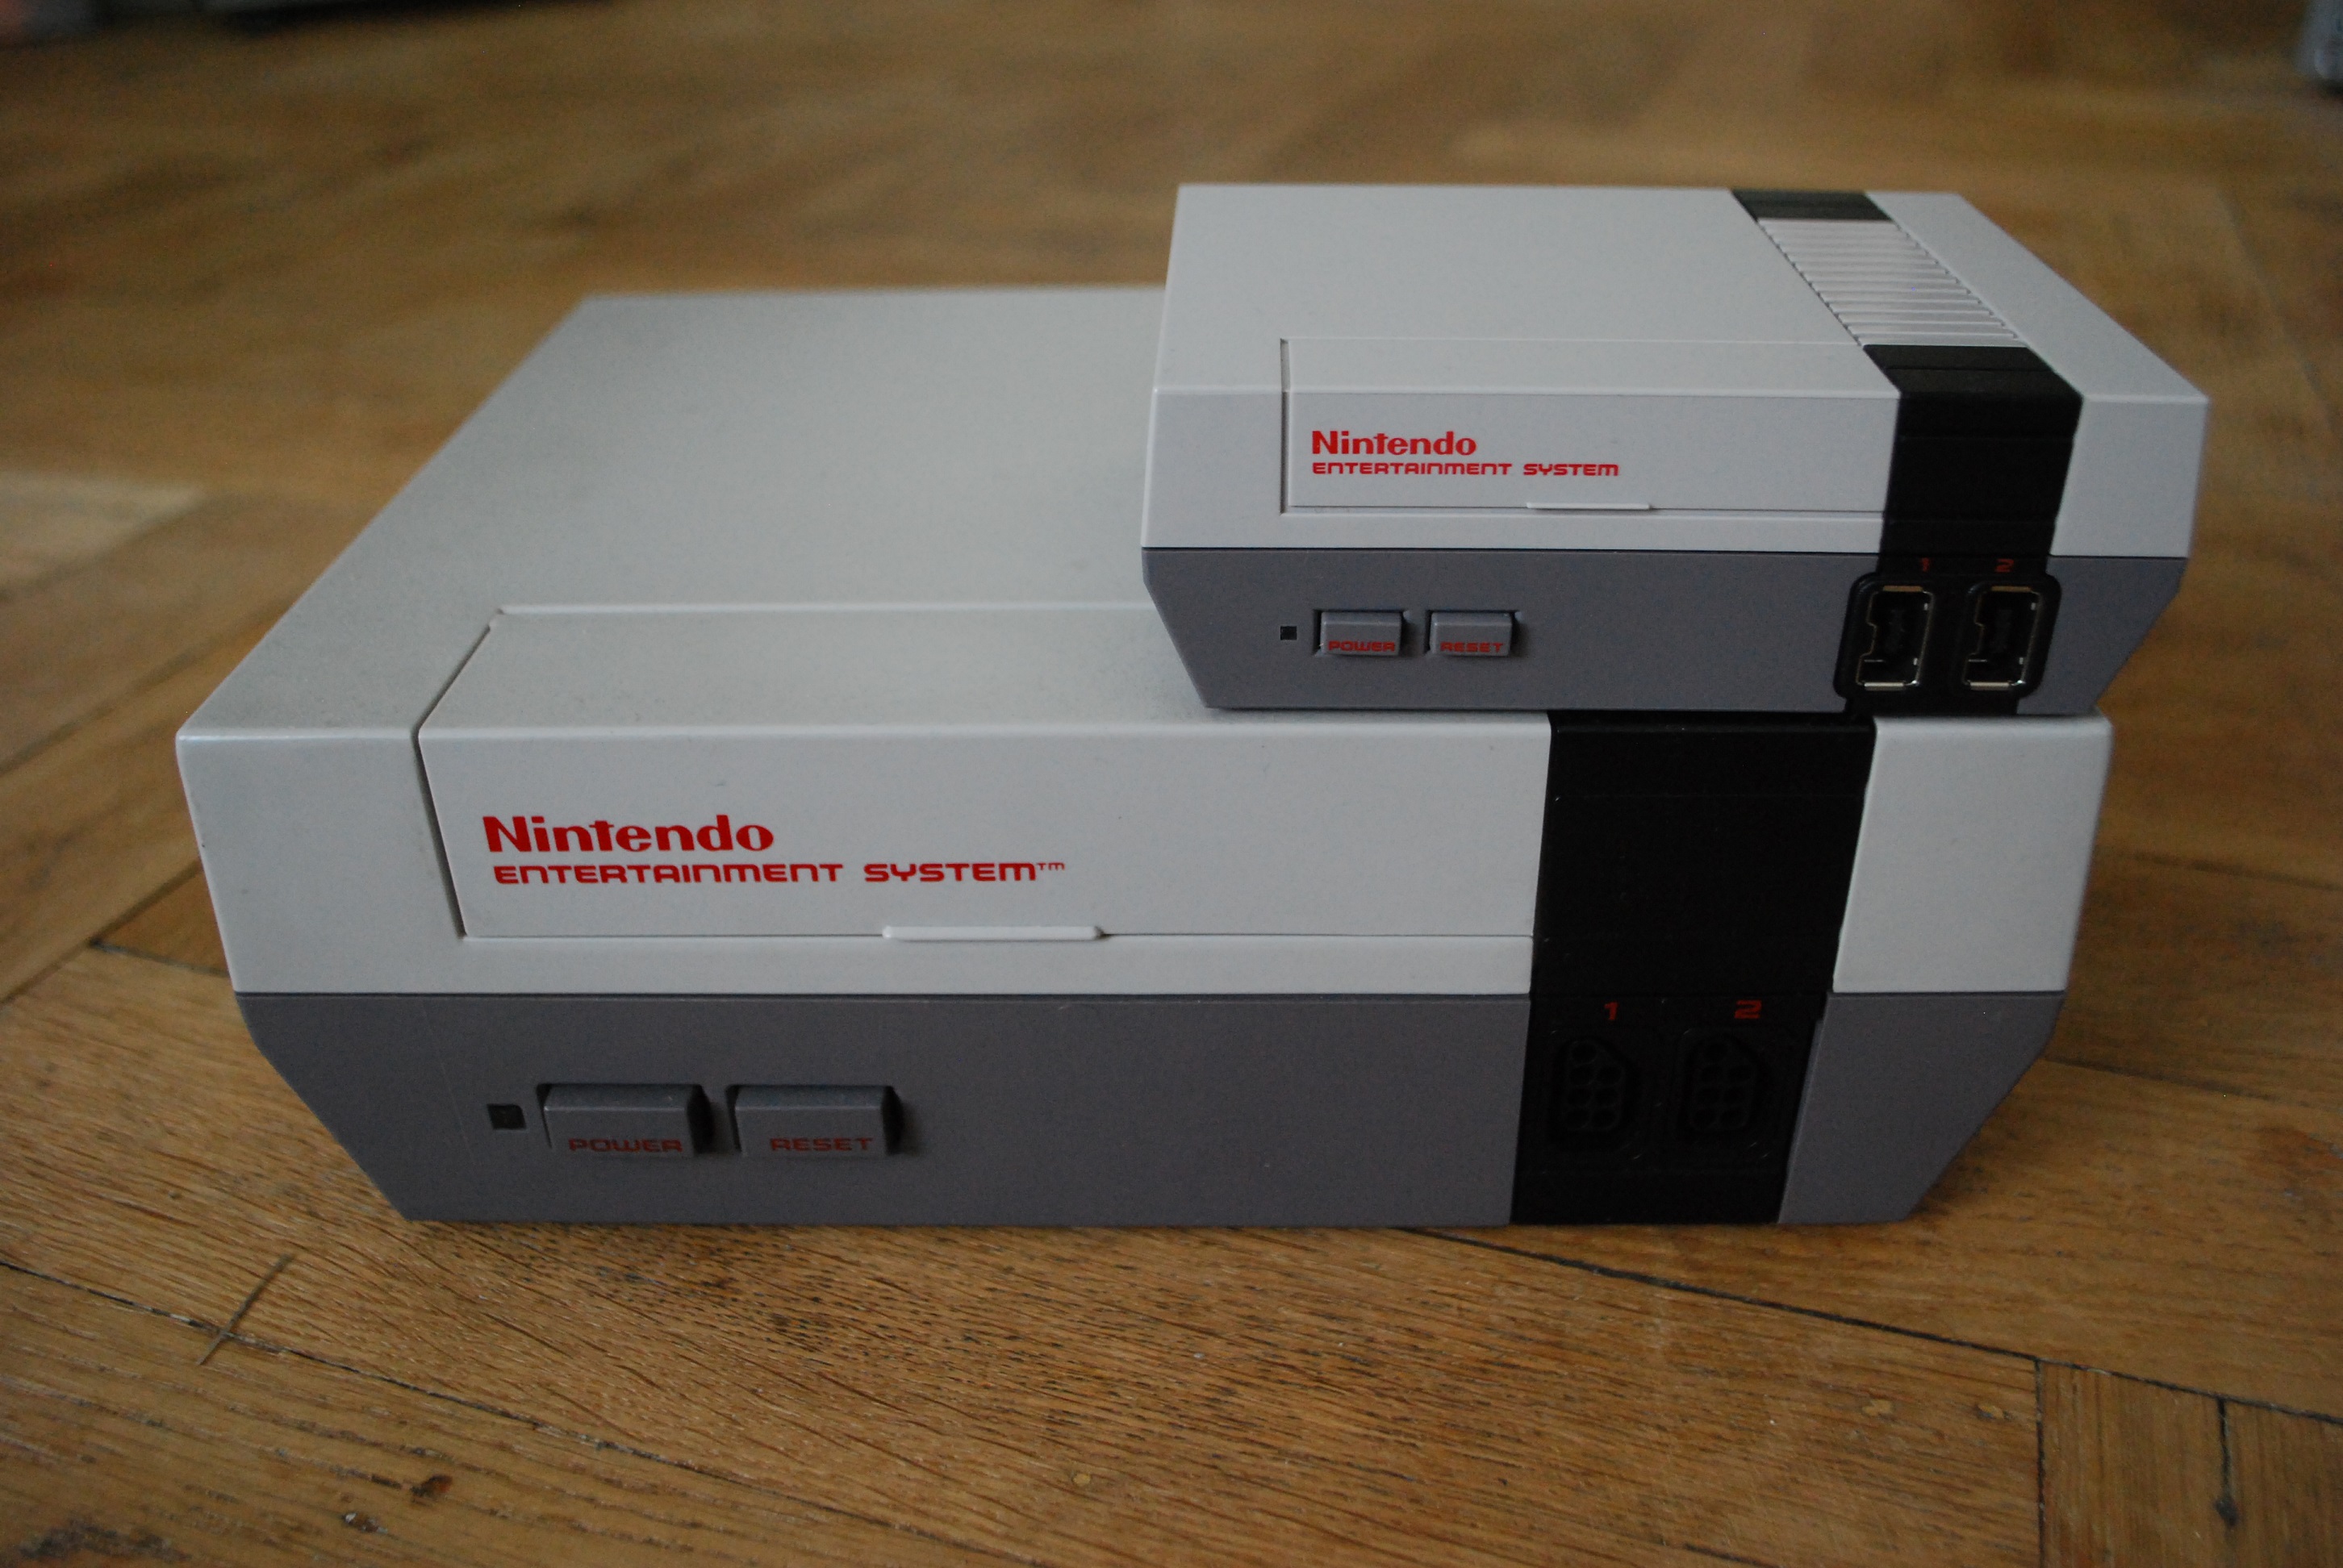 NES Classic Edition versus original NES